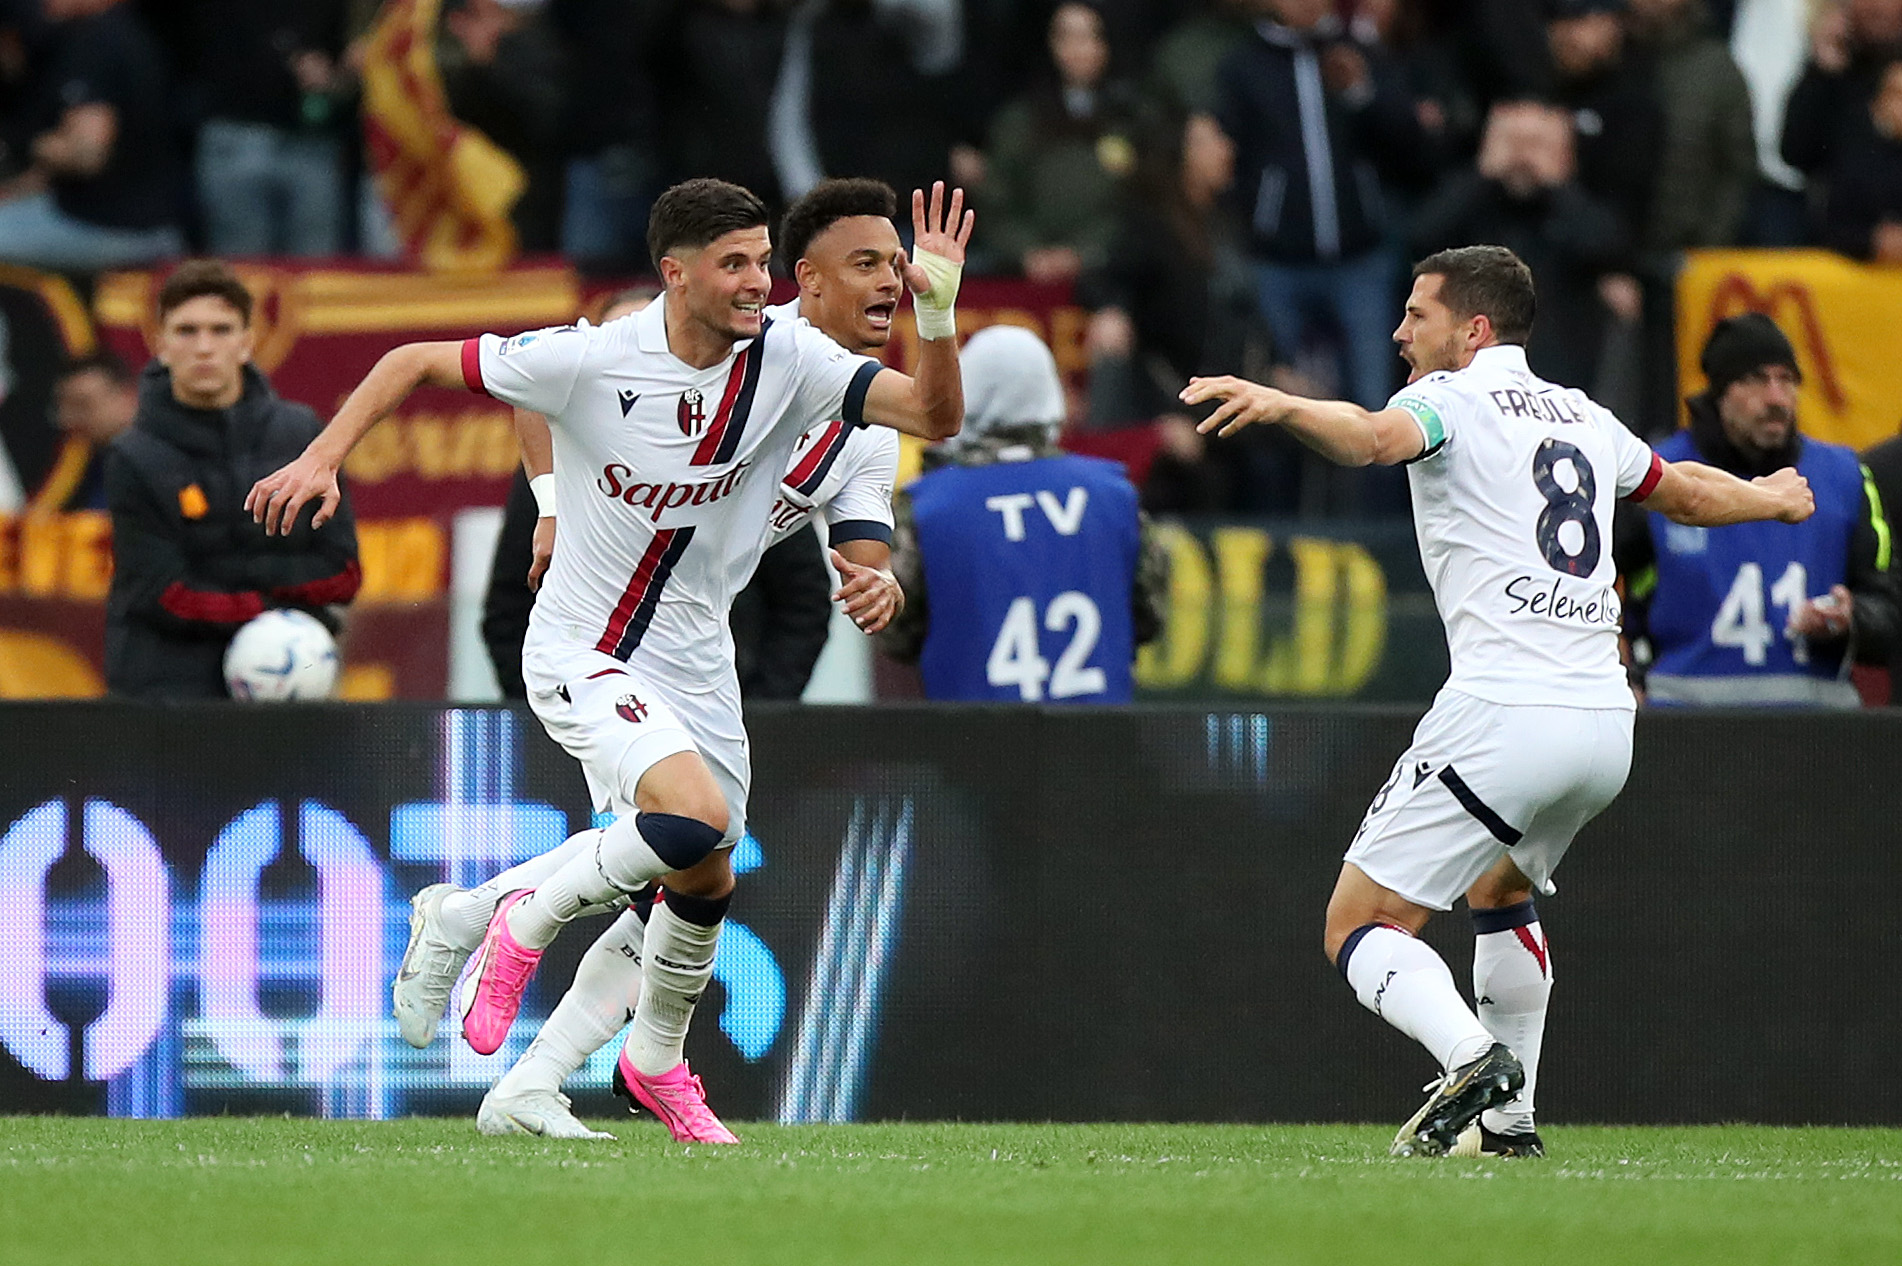 VIDEO – Roma-Bologna 1-3, Serie A: gol e highlights della partita